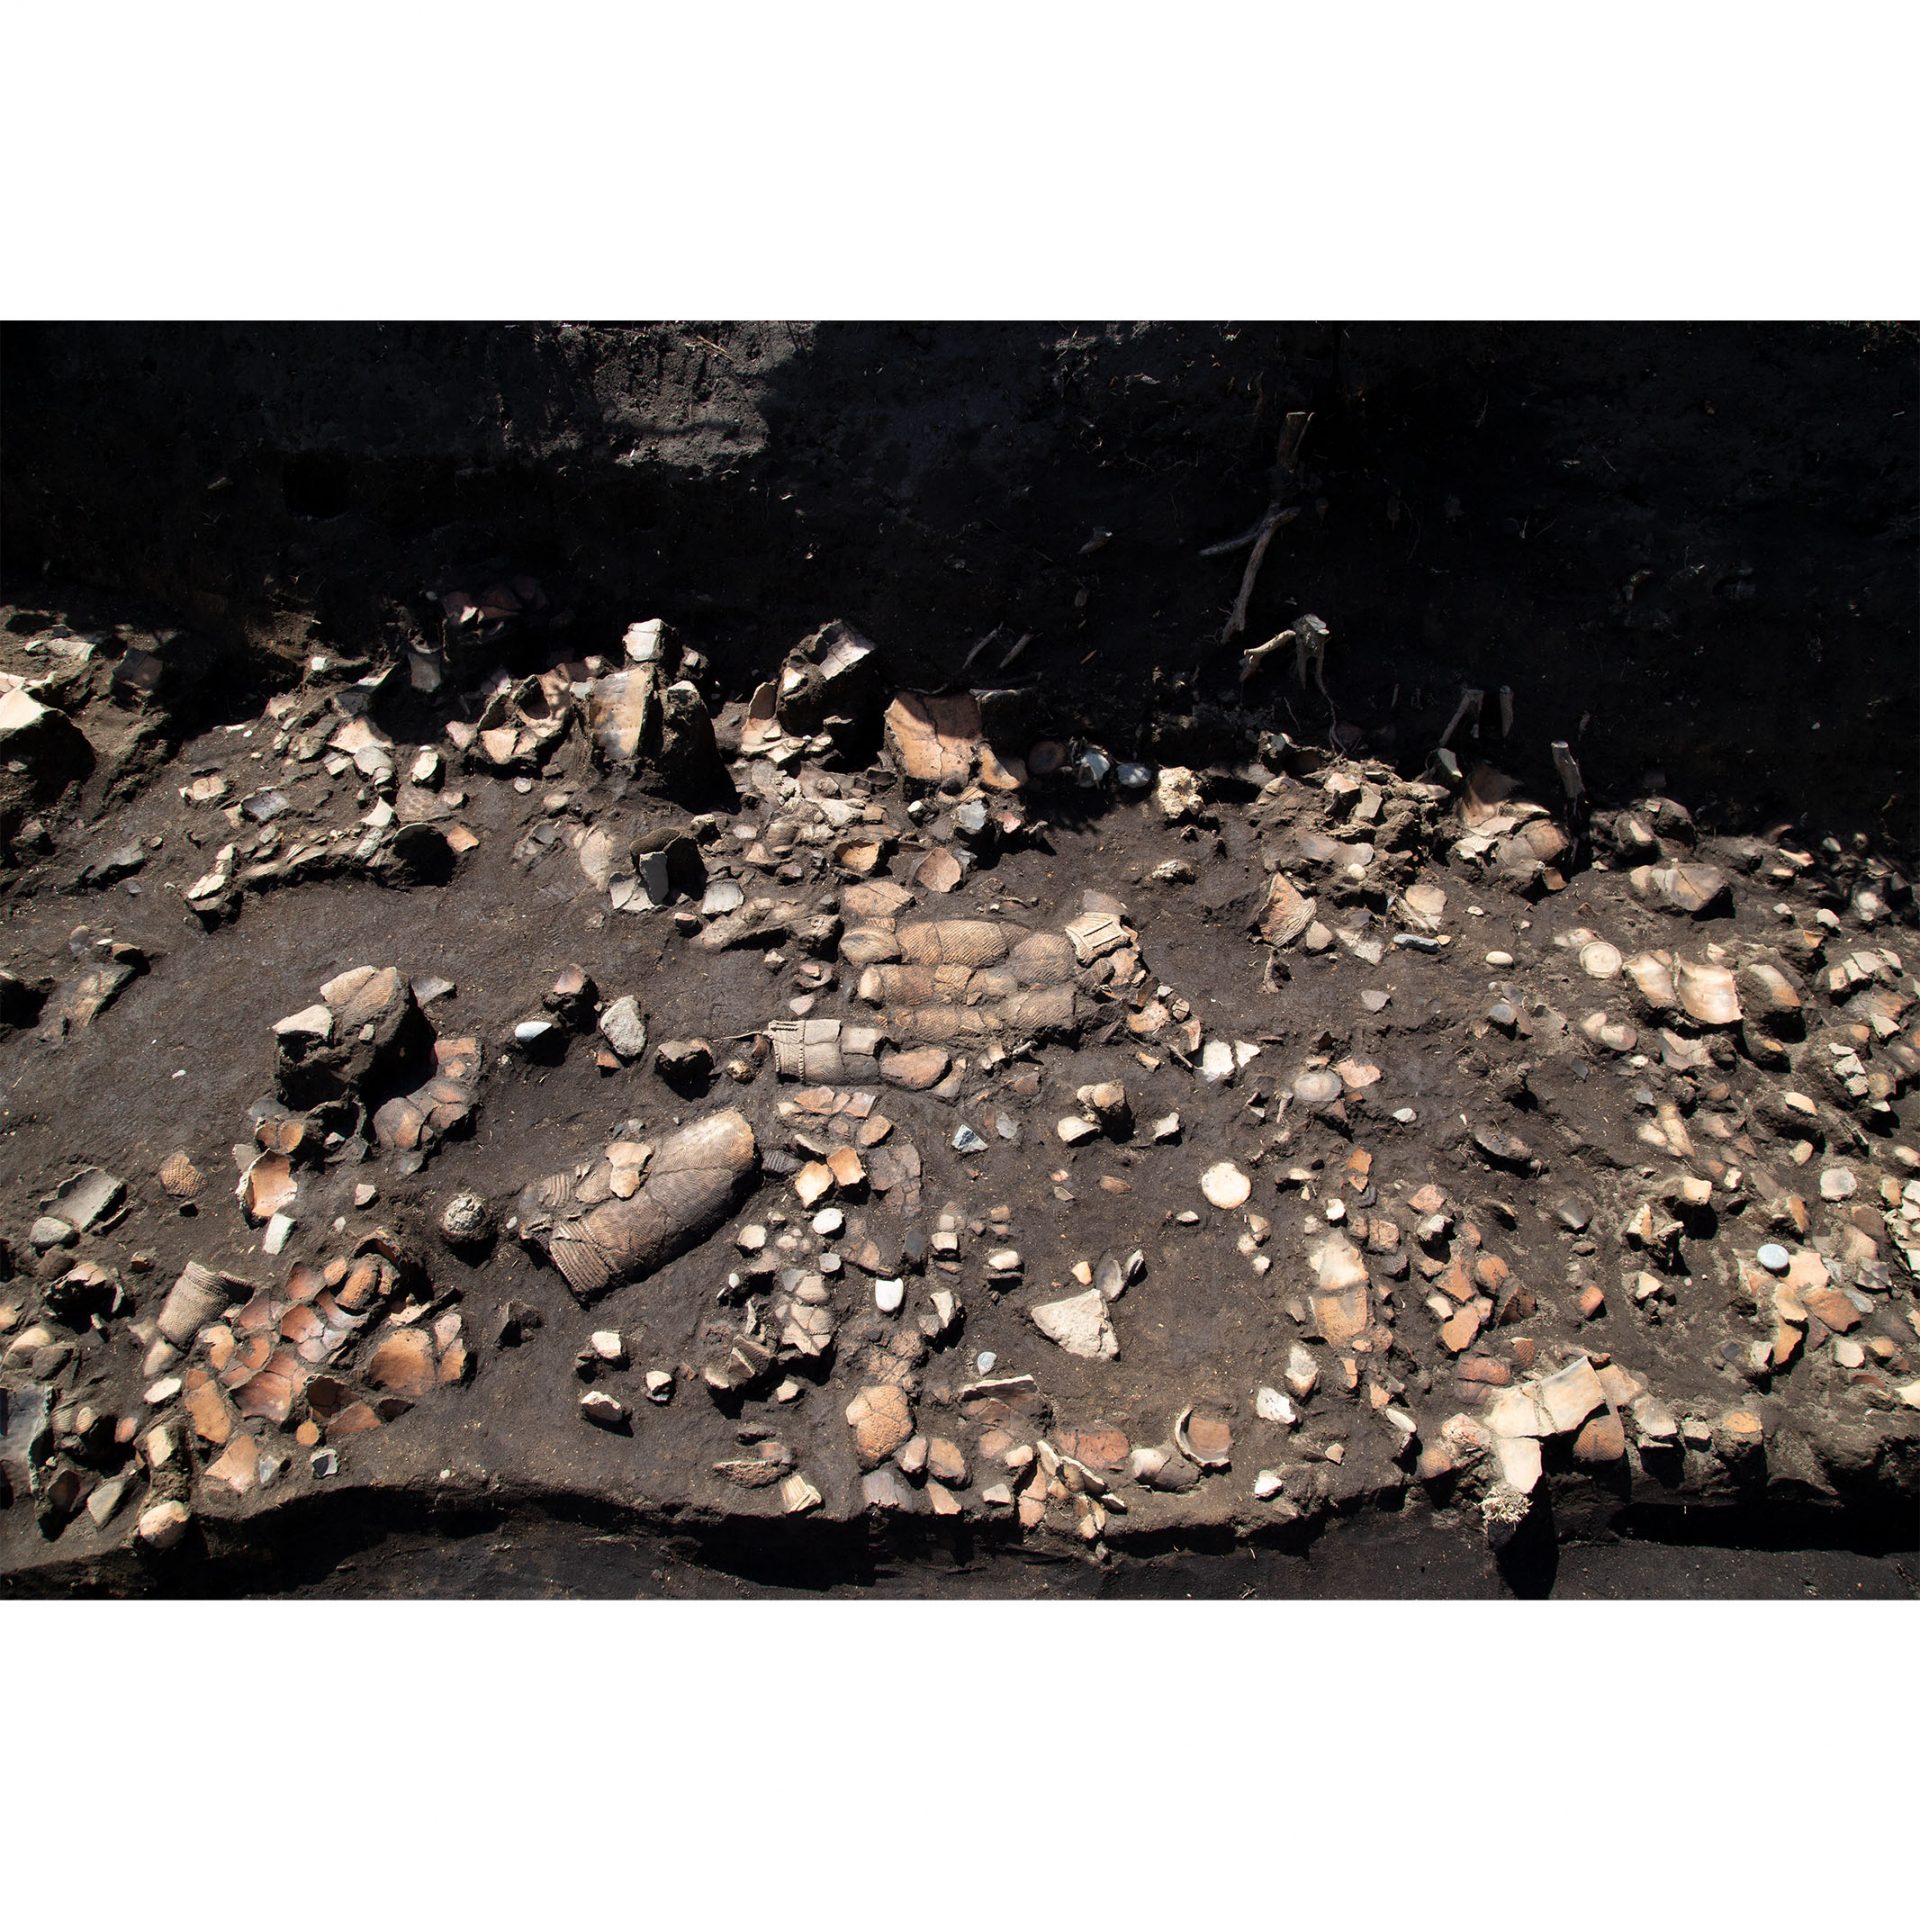 土器や石器が発見された時の様子